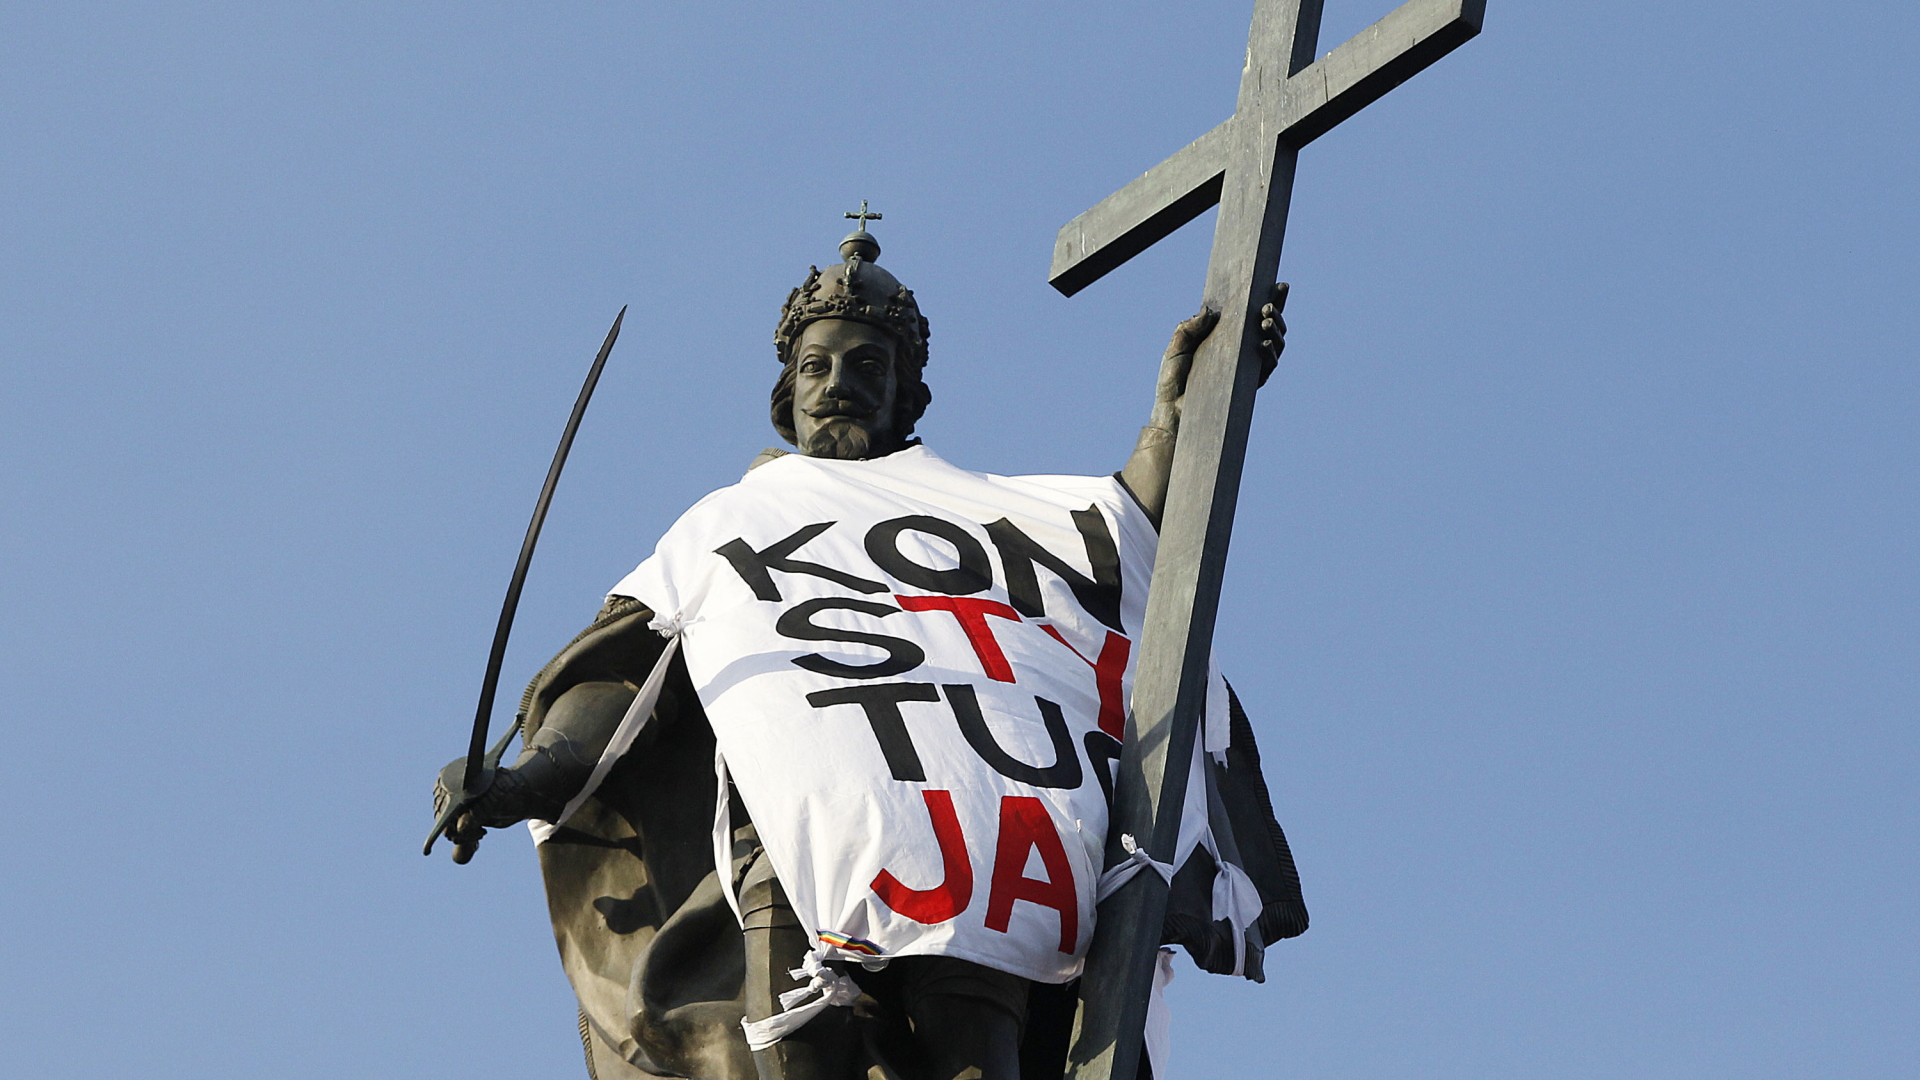 Der Statue von König Sigismund III. in Warschau wurde von Demonstranten ein Tuch mit der Aufschrift "Verfassung" umgelegt - dem Stichwort, unter dem Polen gegen die Justizreform demonstrieren. | Bildquelle: dpa